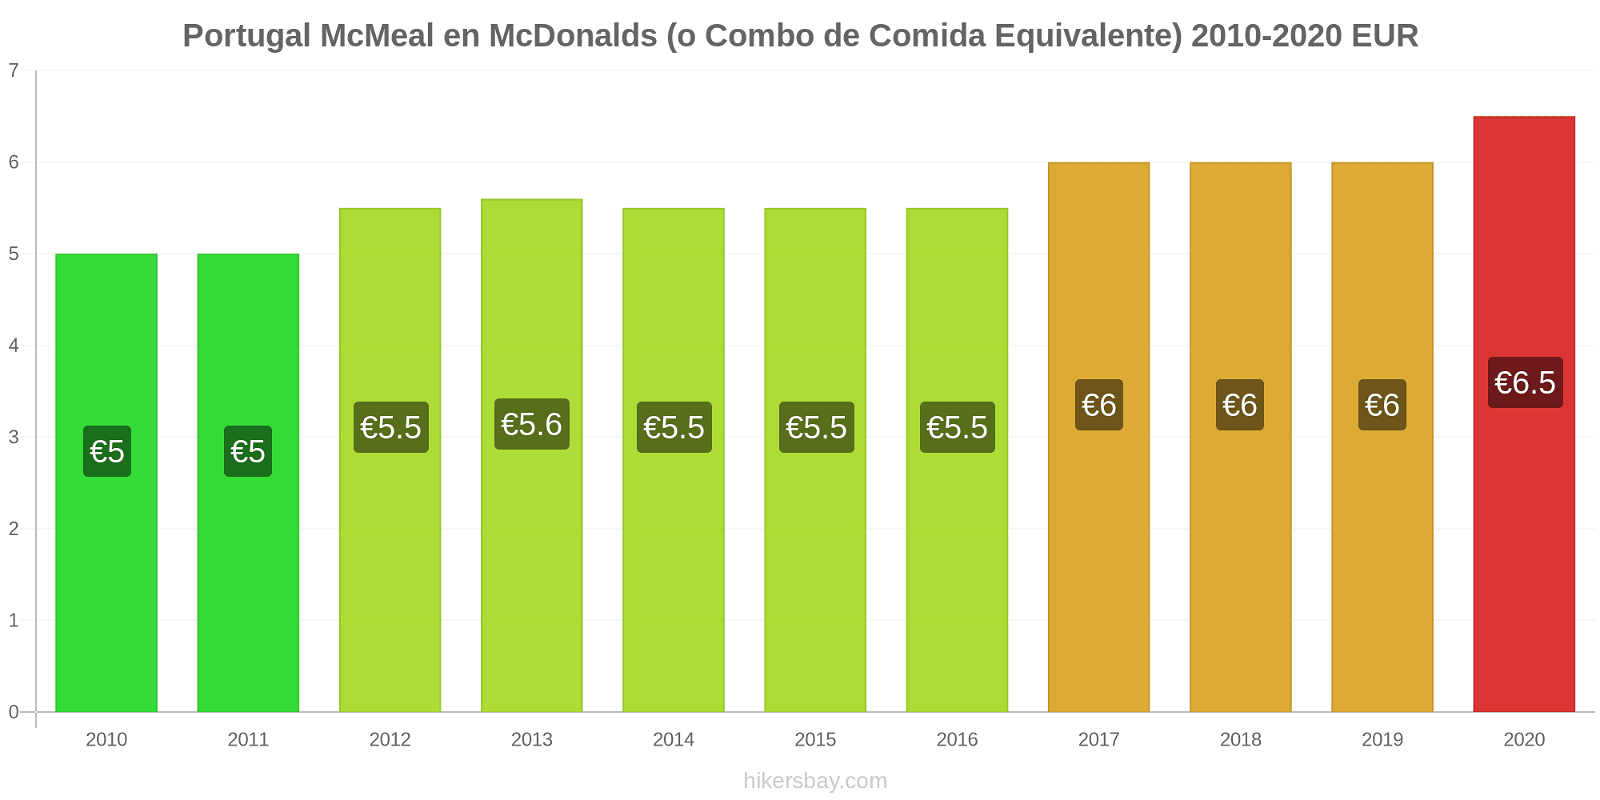 Portugal cambios de precios McMeal en McDonalds (o menú equivalente) hikersbay.com